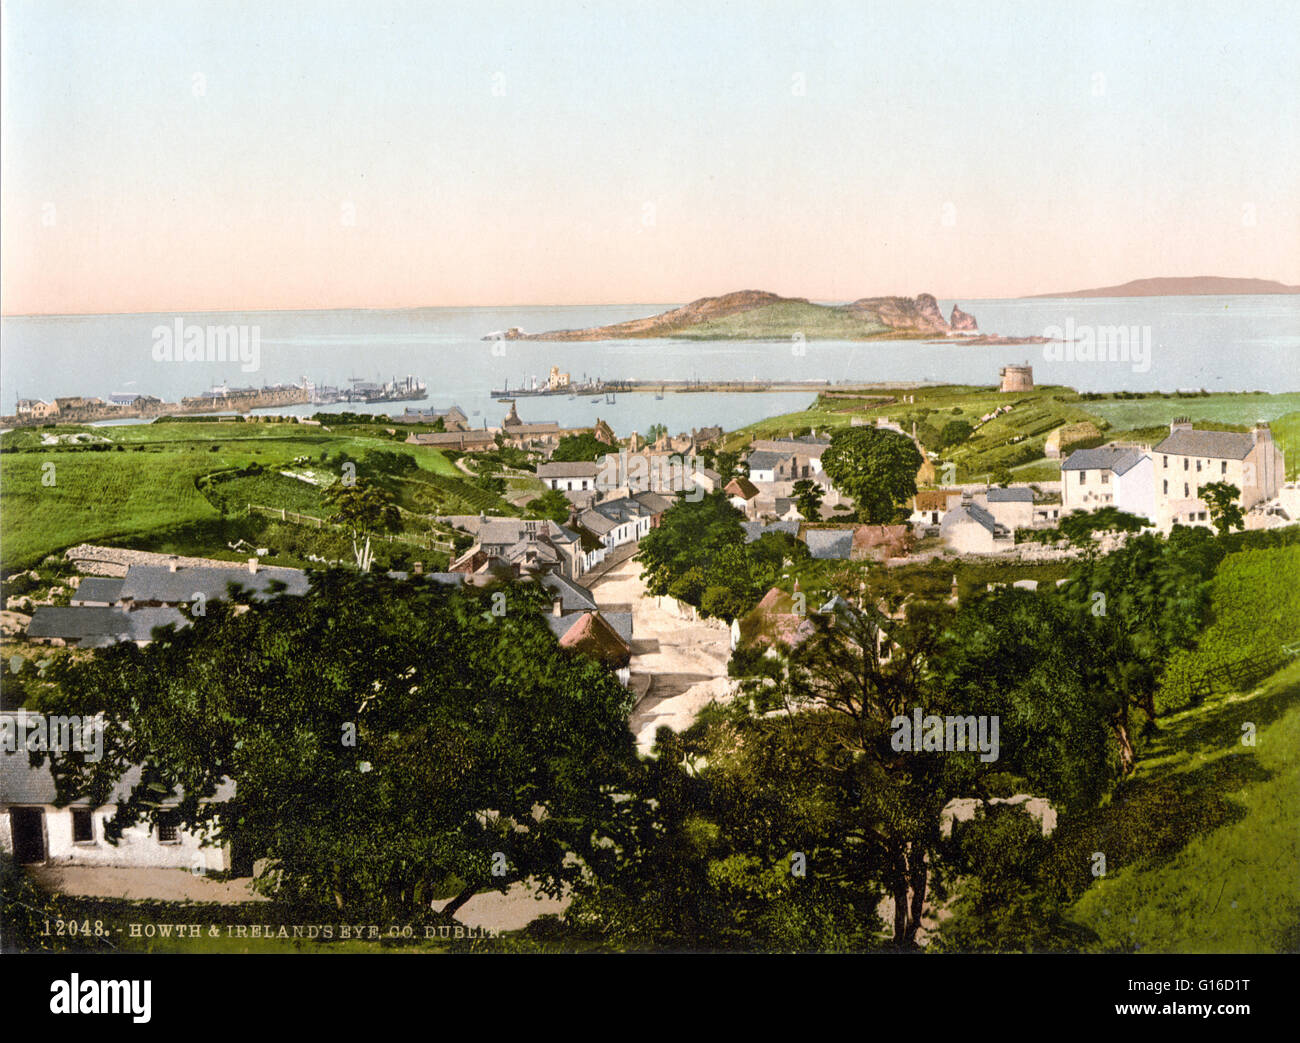 Howth et Ireland's Eye photographié par le Detroit Publishing Company vers 1890-1900. Ireland's Eye est une petite île inhabitée au large de la côte du comté de Dublin, Irlande, situé directement au nord du port de Howth. Les ruines d'une tour Martello et un 8e Banque D'Images